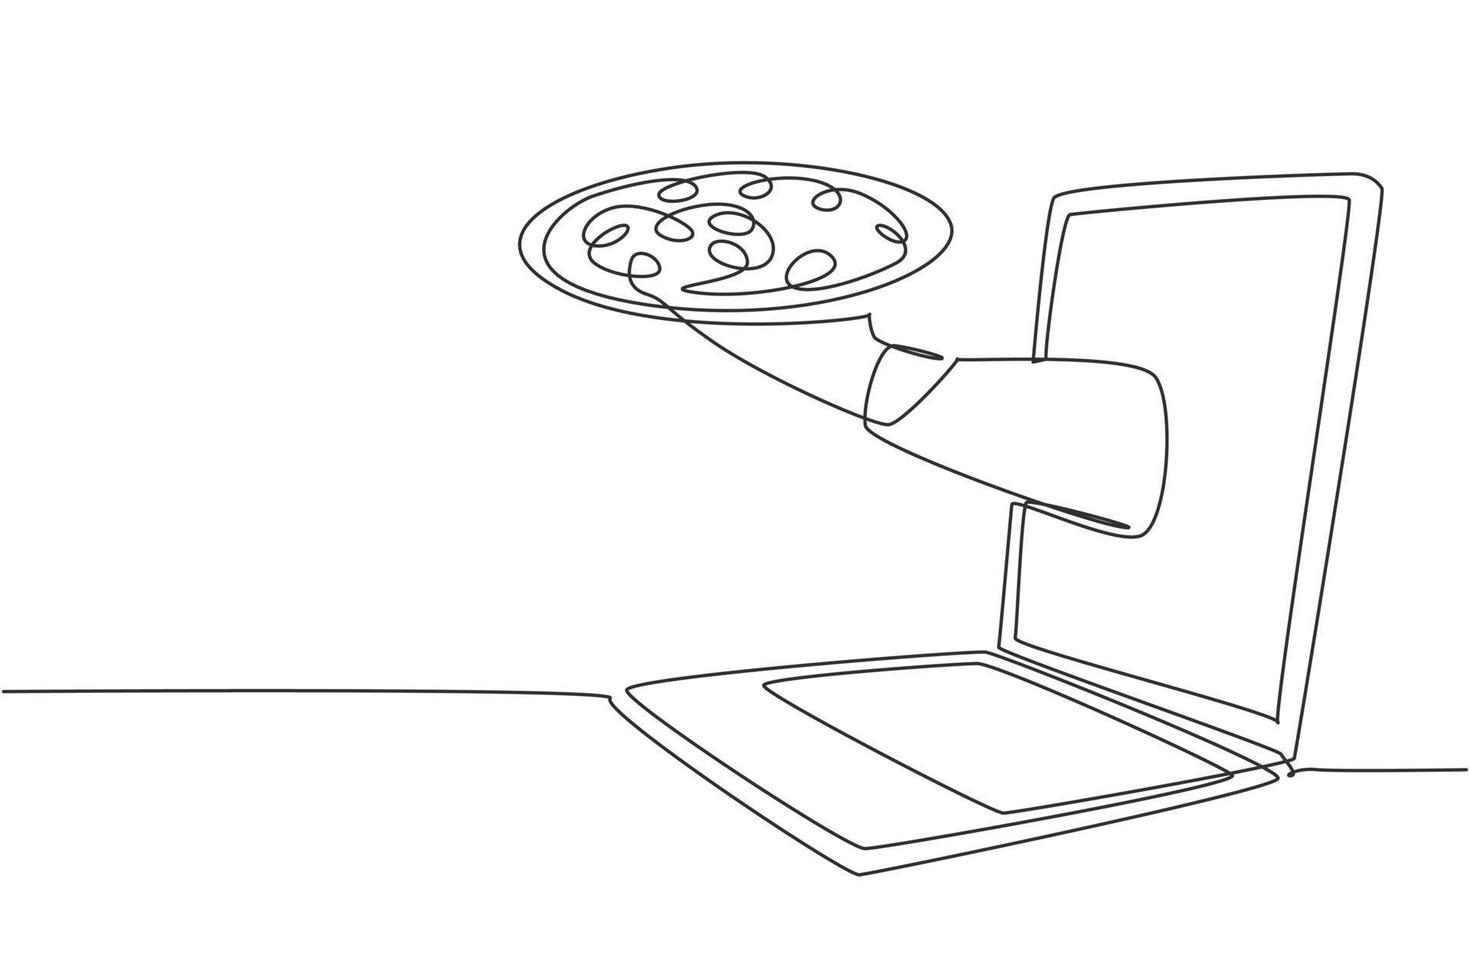 Kontinuierlich eine Linie, die Hände aus dem Laptop-Bildschirm zeichnet, wobei das Tablett geöffnet ist, um Pizza zu servieren. E-Shop. Essen digital bestellen. Online-Lieferservice-Konzept. Einzeilige Zeichnung Design Vektorgrafik Illustration vektor